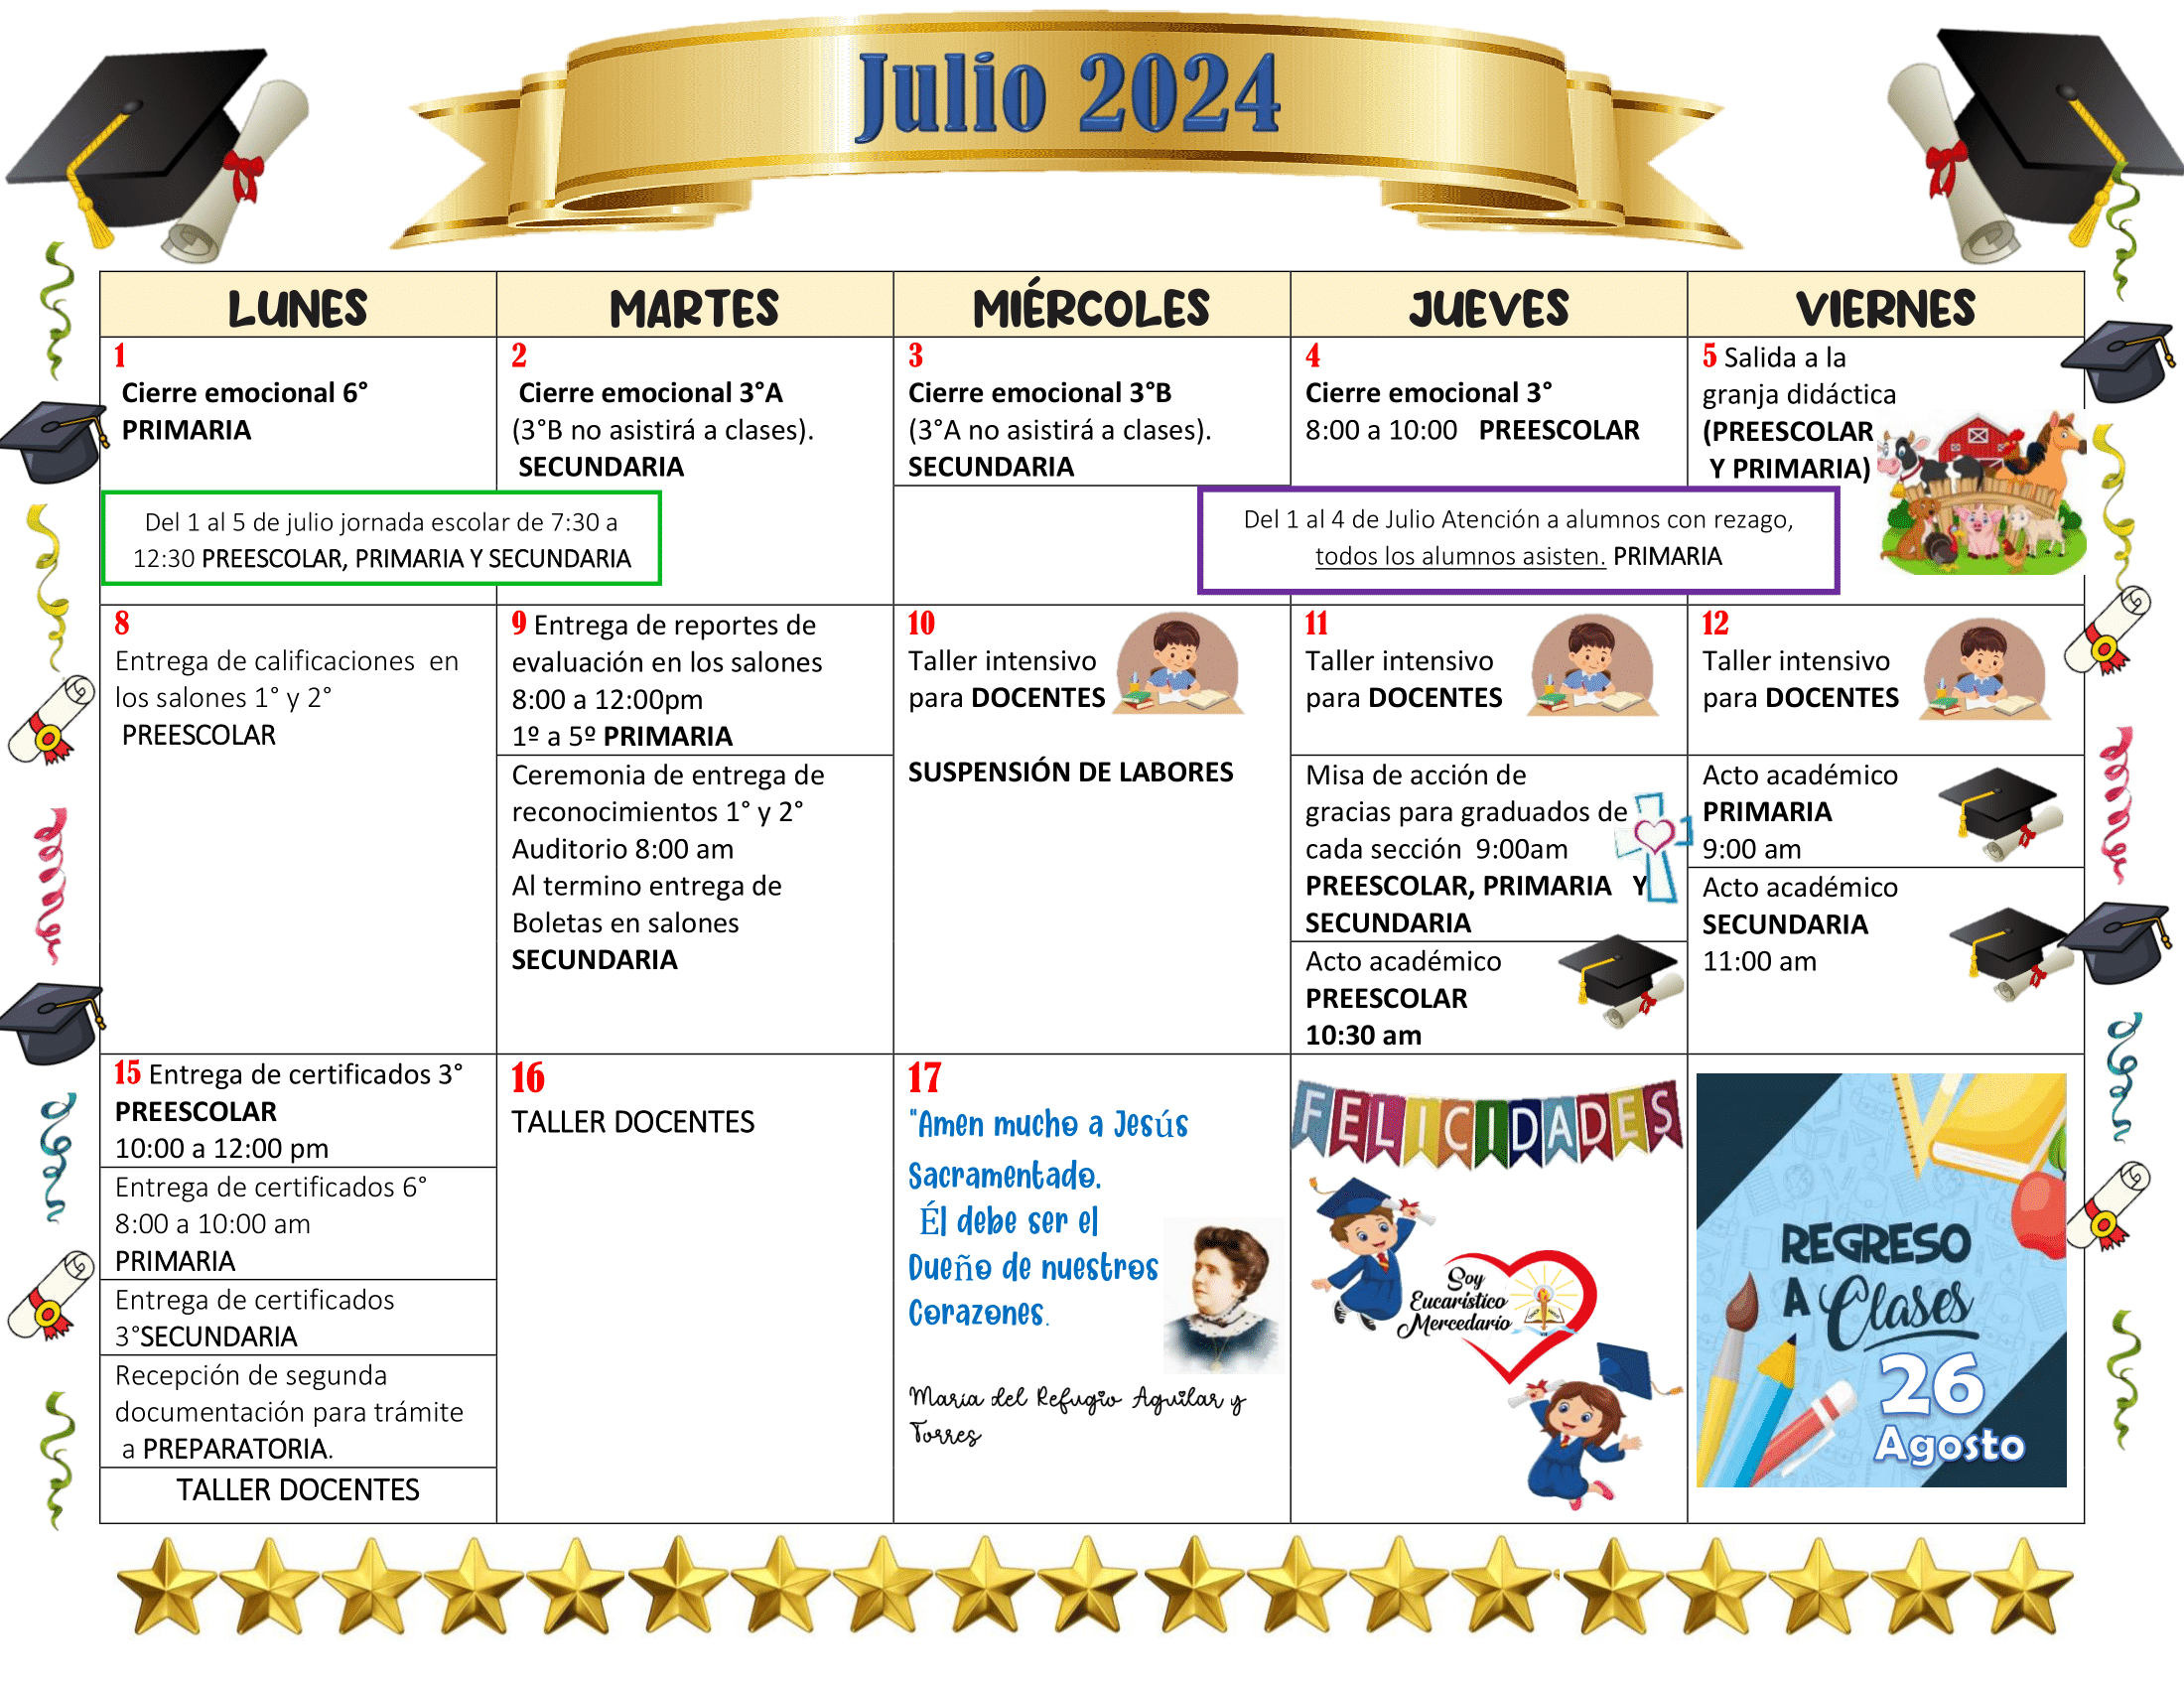 CALENDARIO DE JULIO 2024